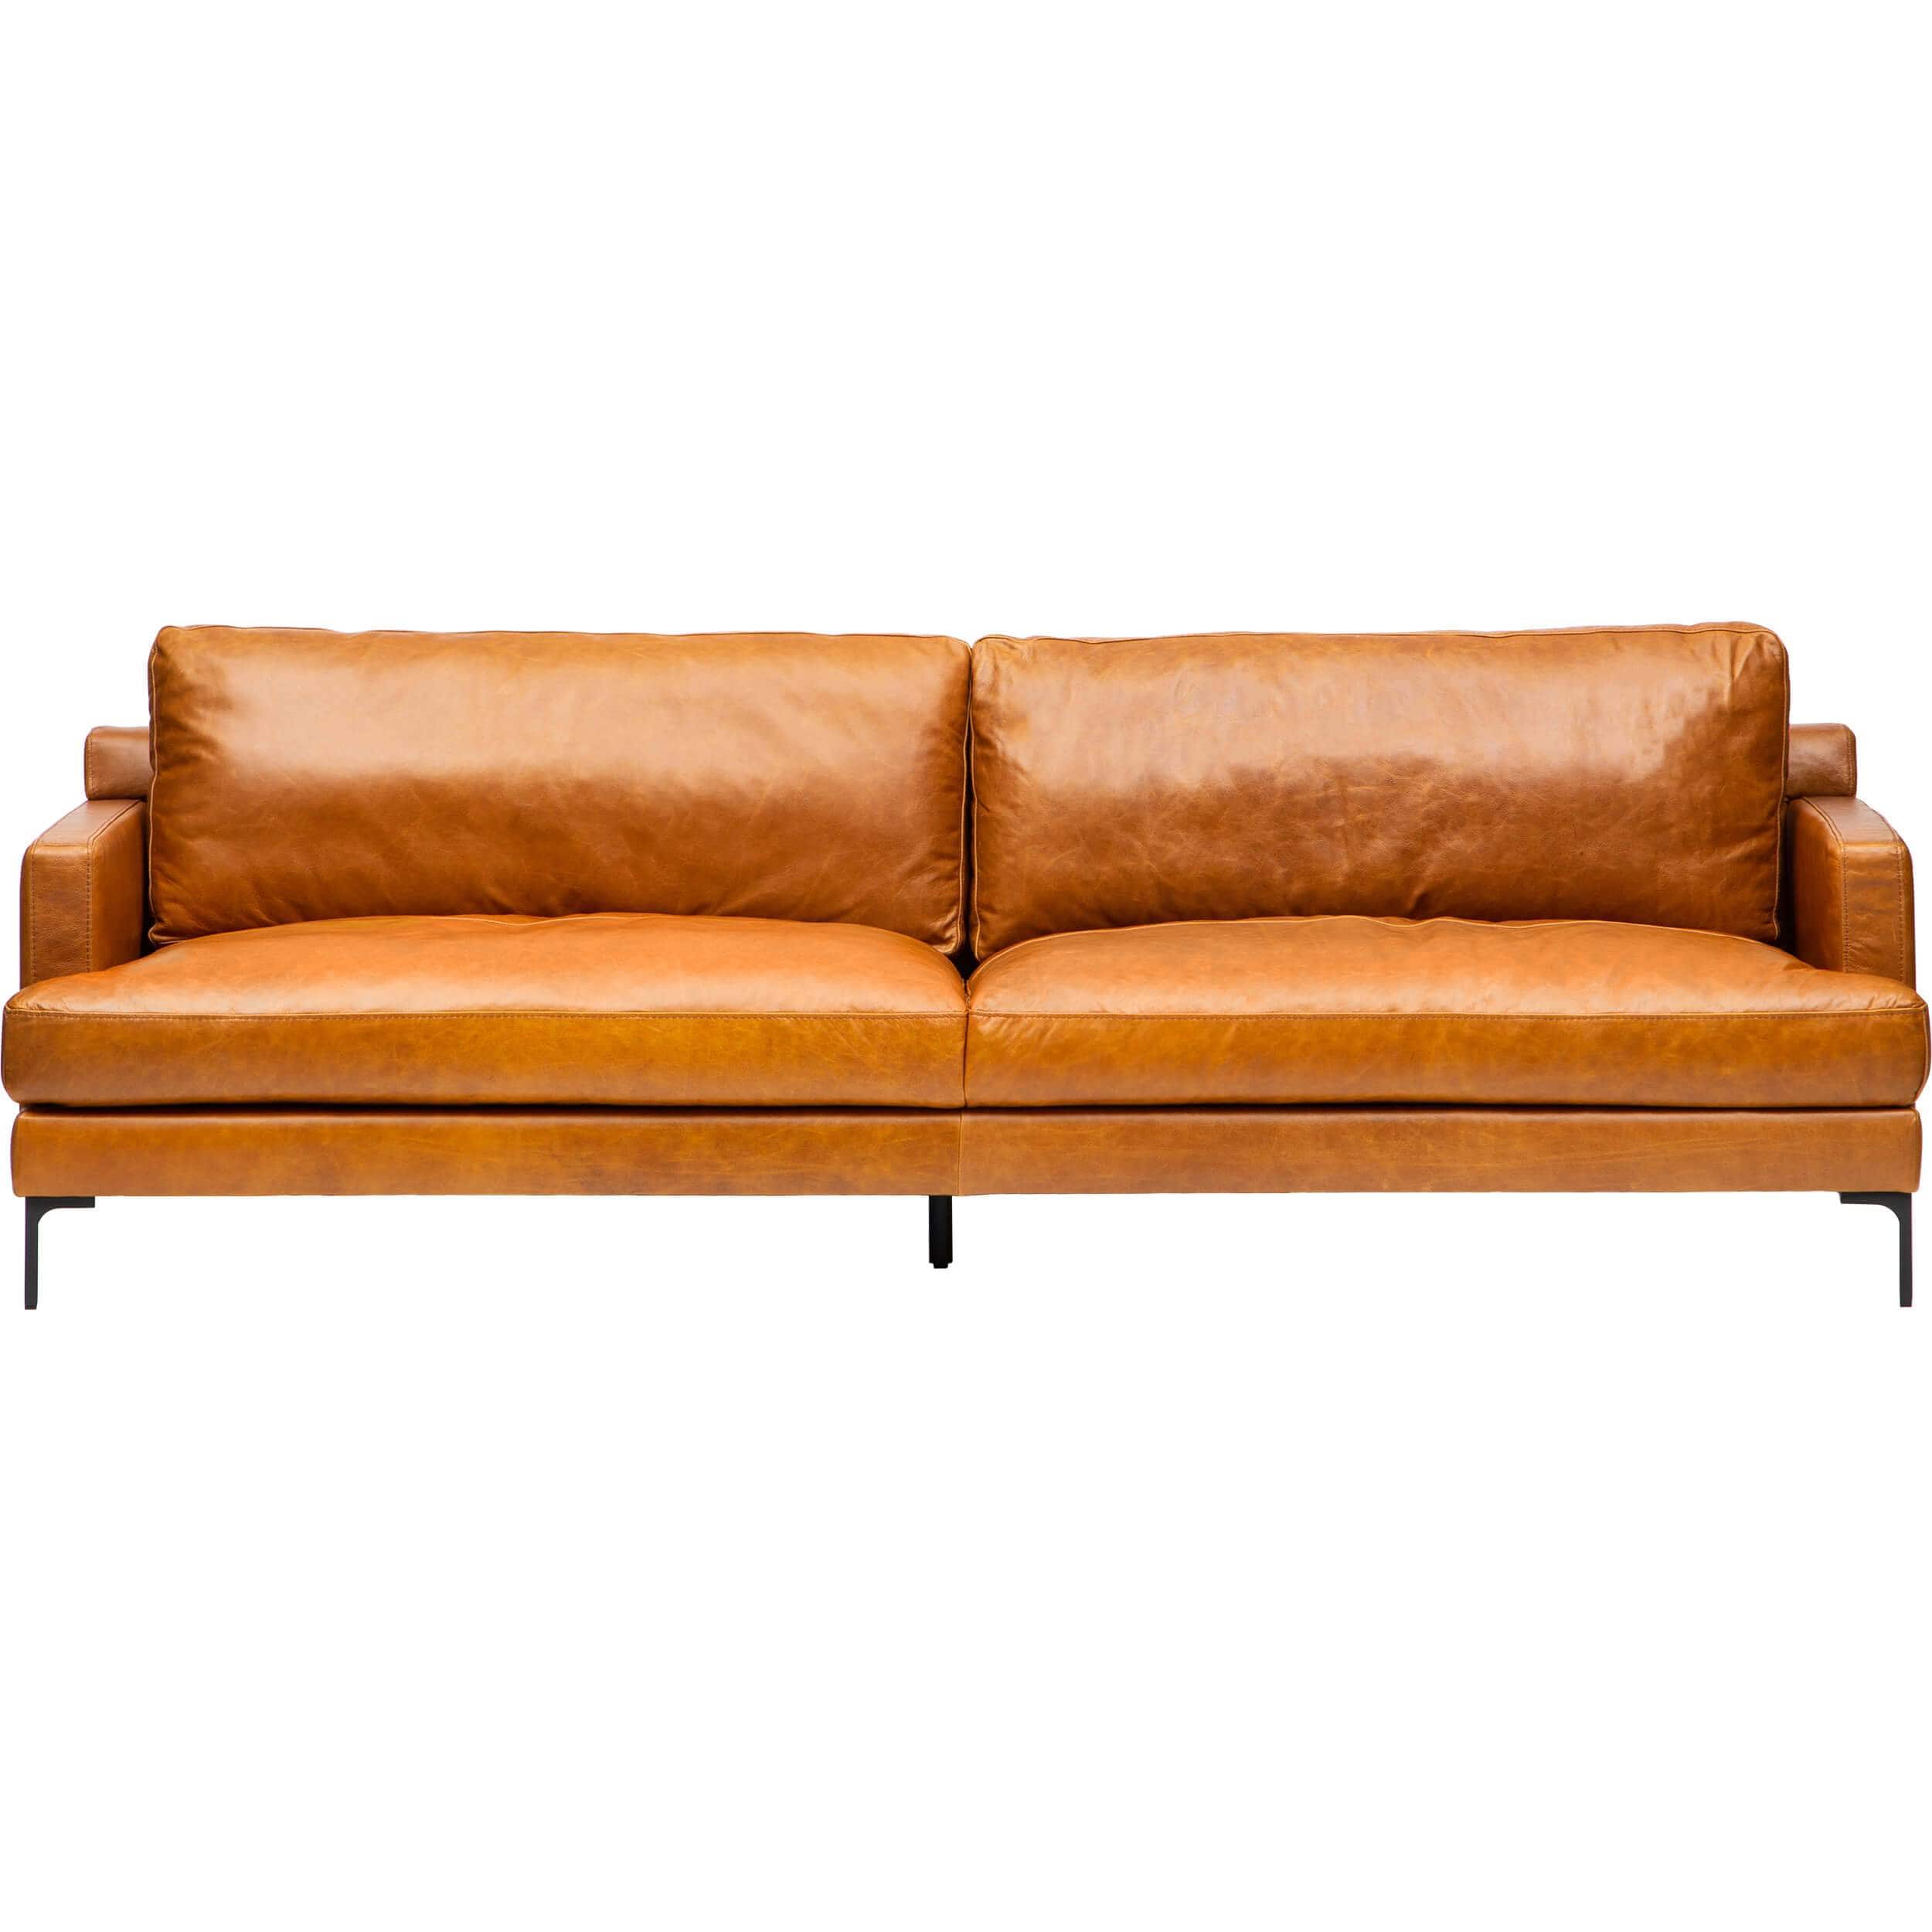 Image of Ansel Leather Sofa, Oil Buffalo Camel